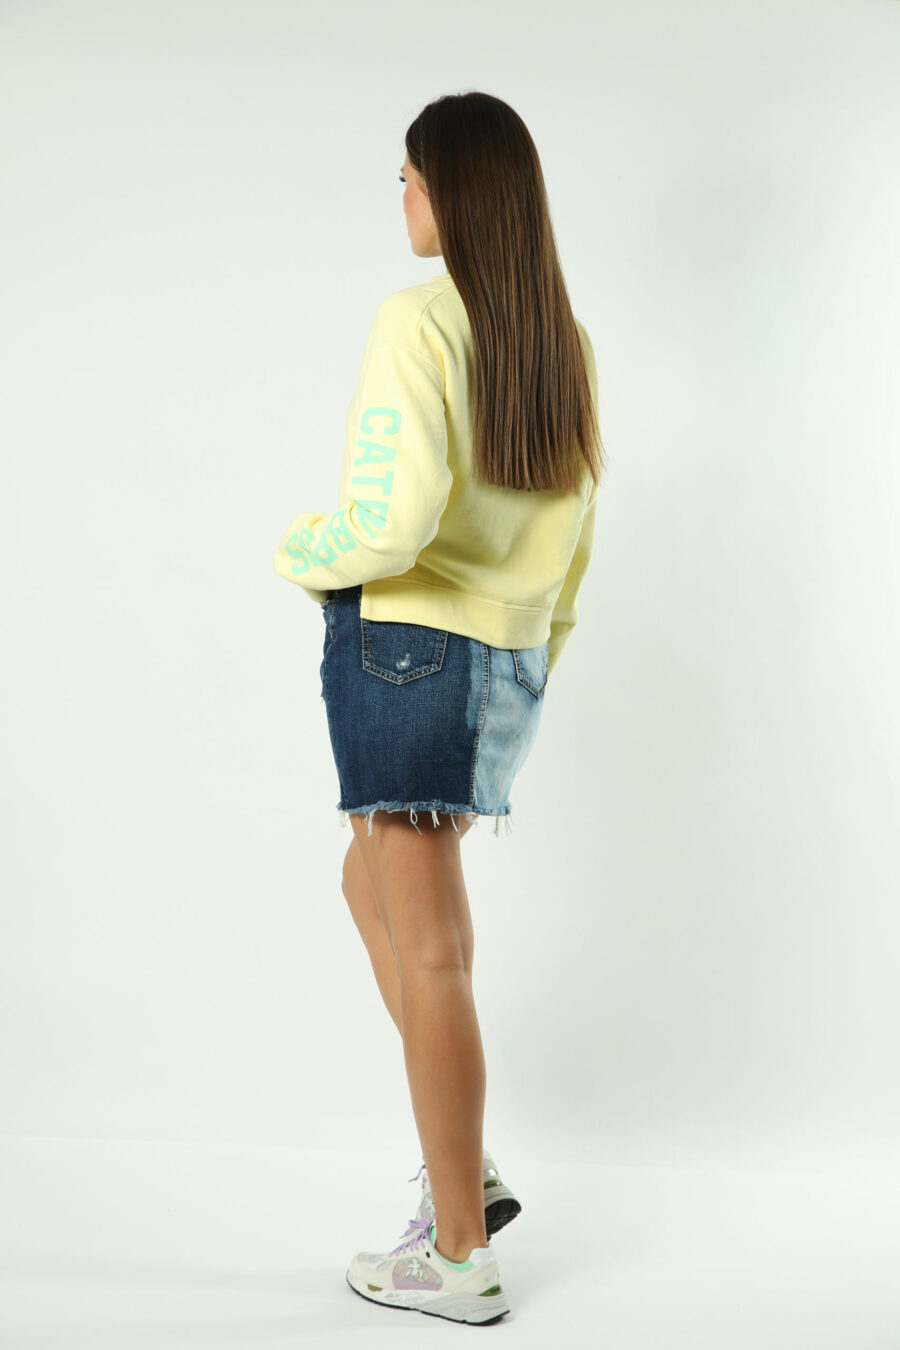 Gelbes Sweatshirt mit grünem Maxilogo und Text auf den Ärmeln - 8052134554463 5